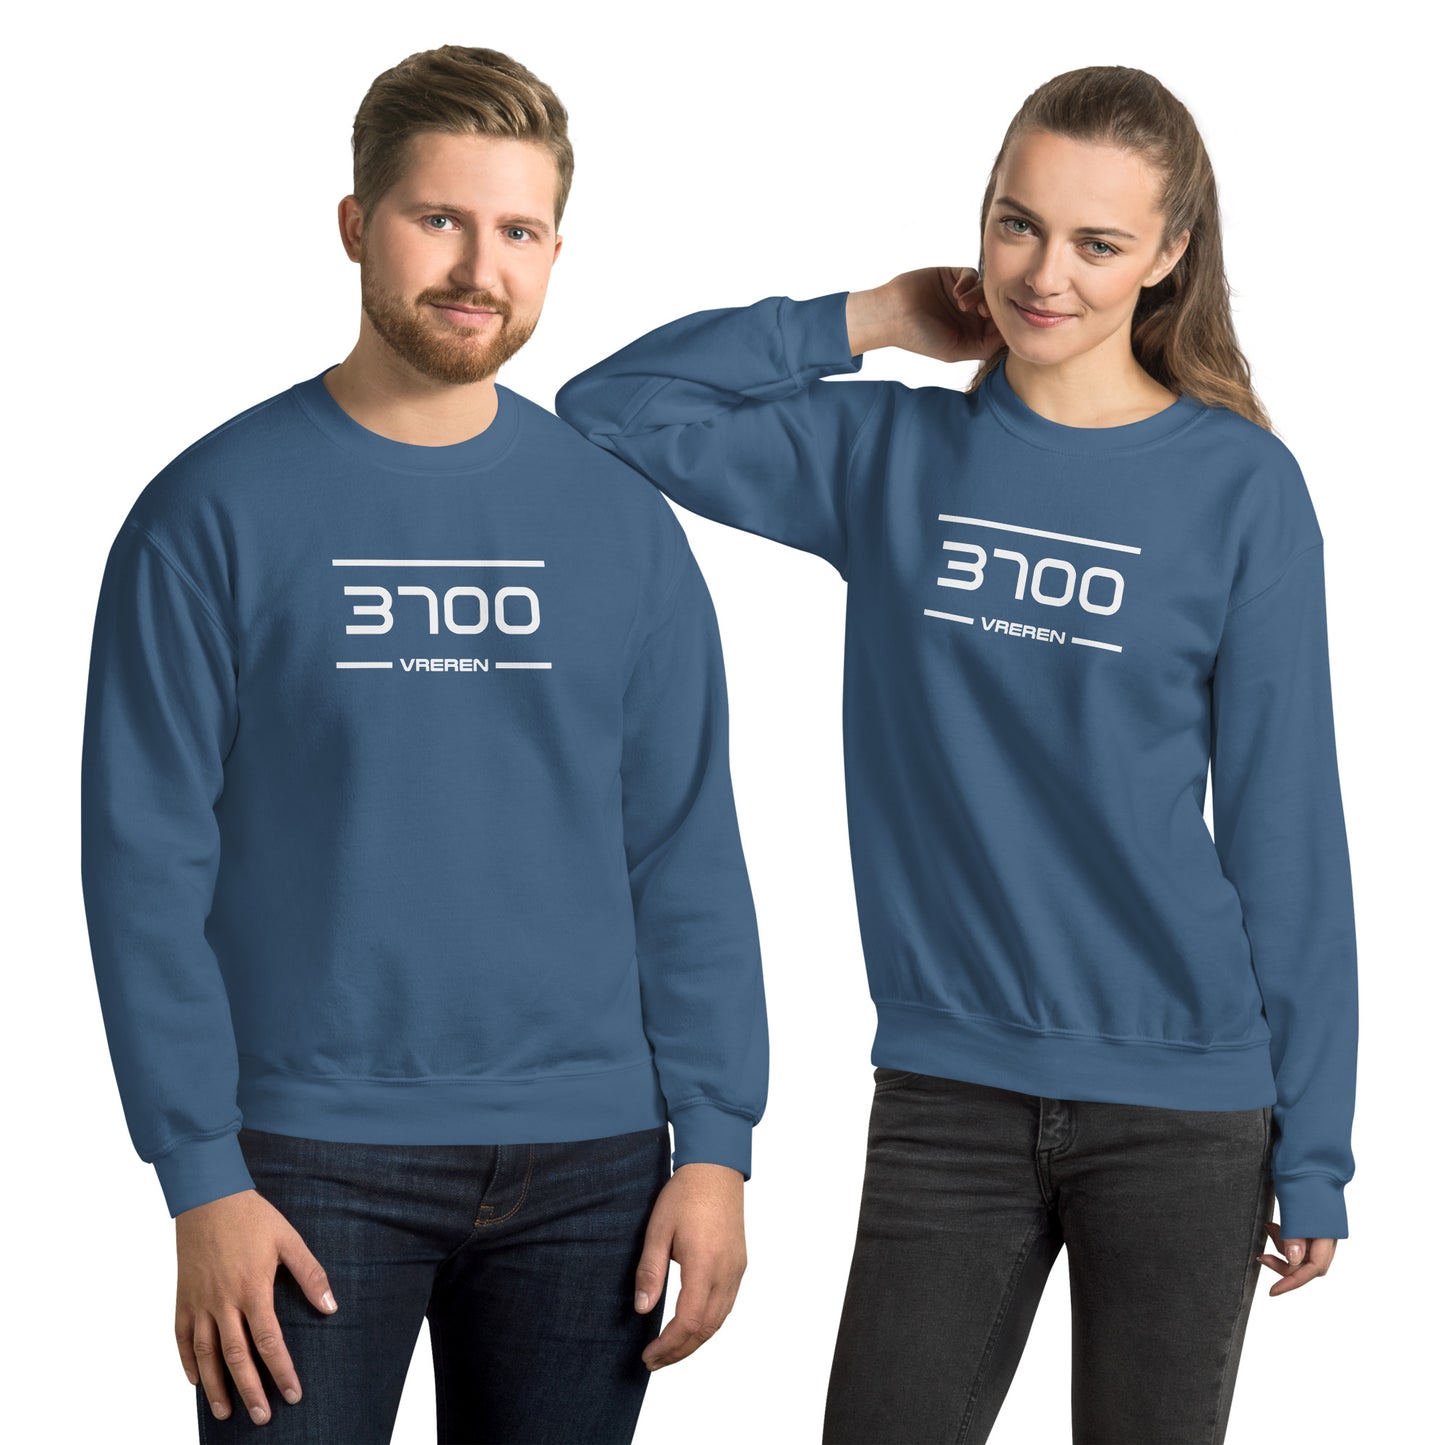 Sweater - 3700 - Vreren (M/V)